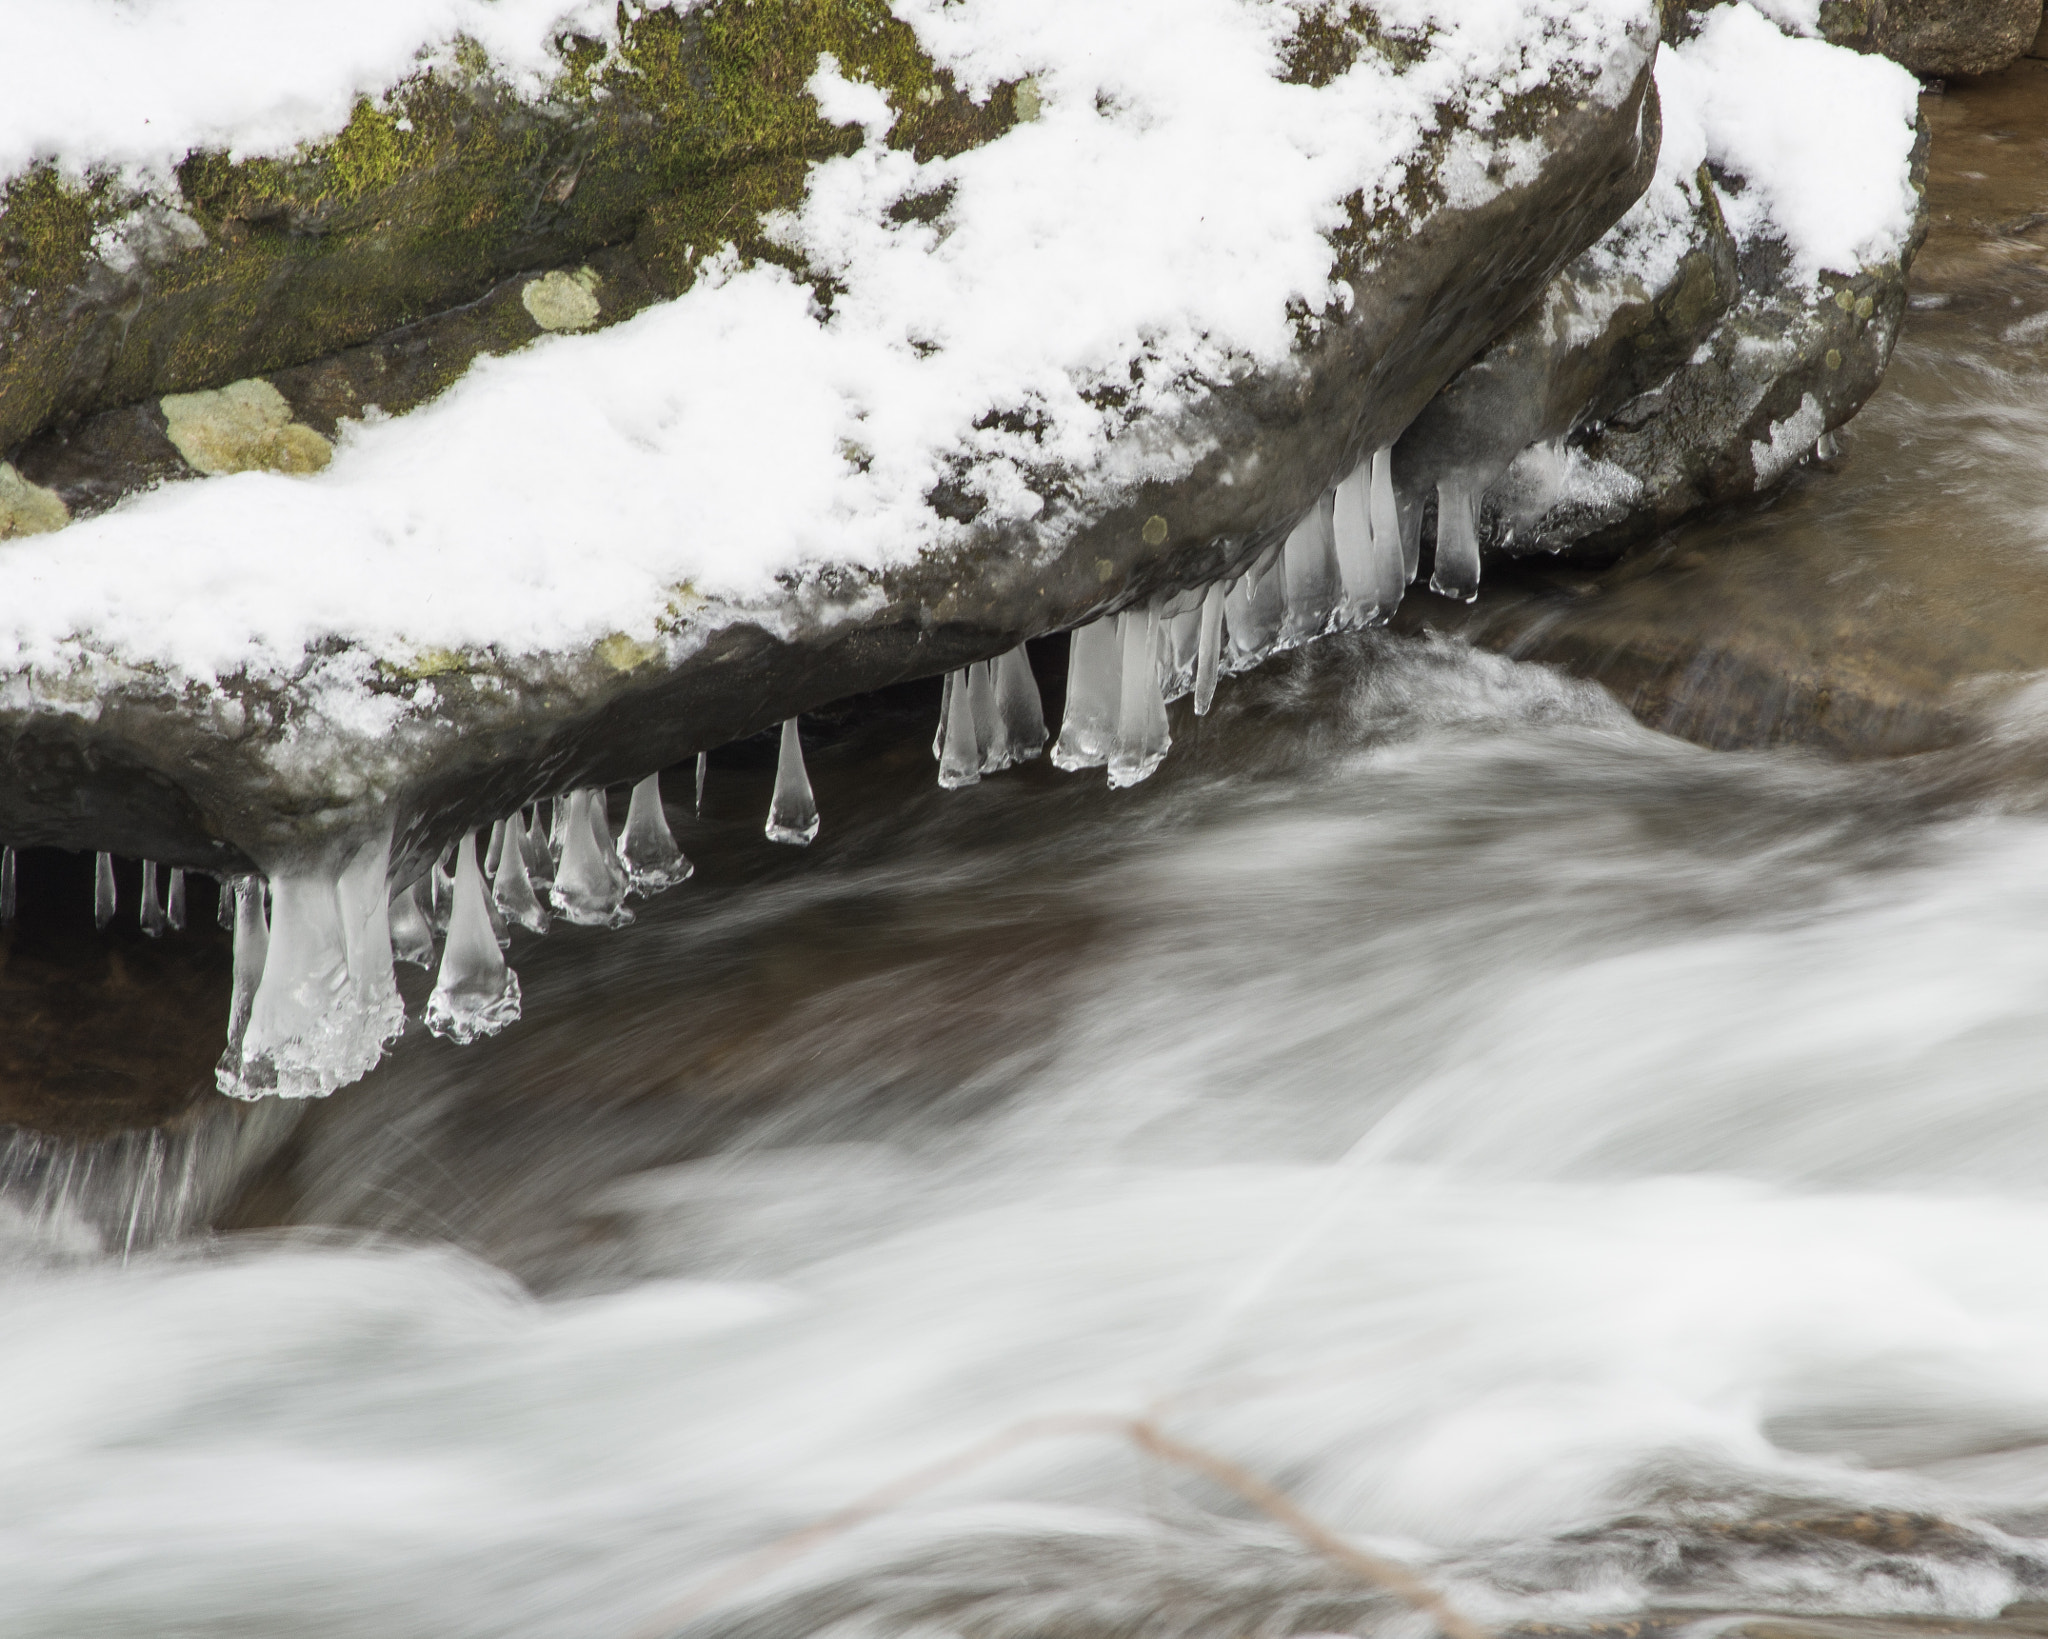 Nikon D7100 + AF Nikkor 70-210mm f/4-5.6 sample photo. Last ice on creek photography